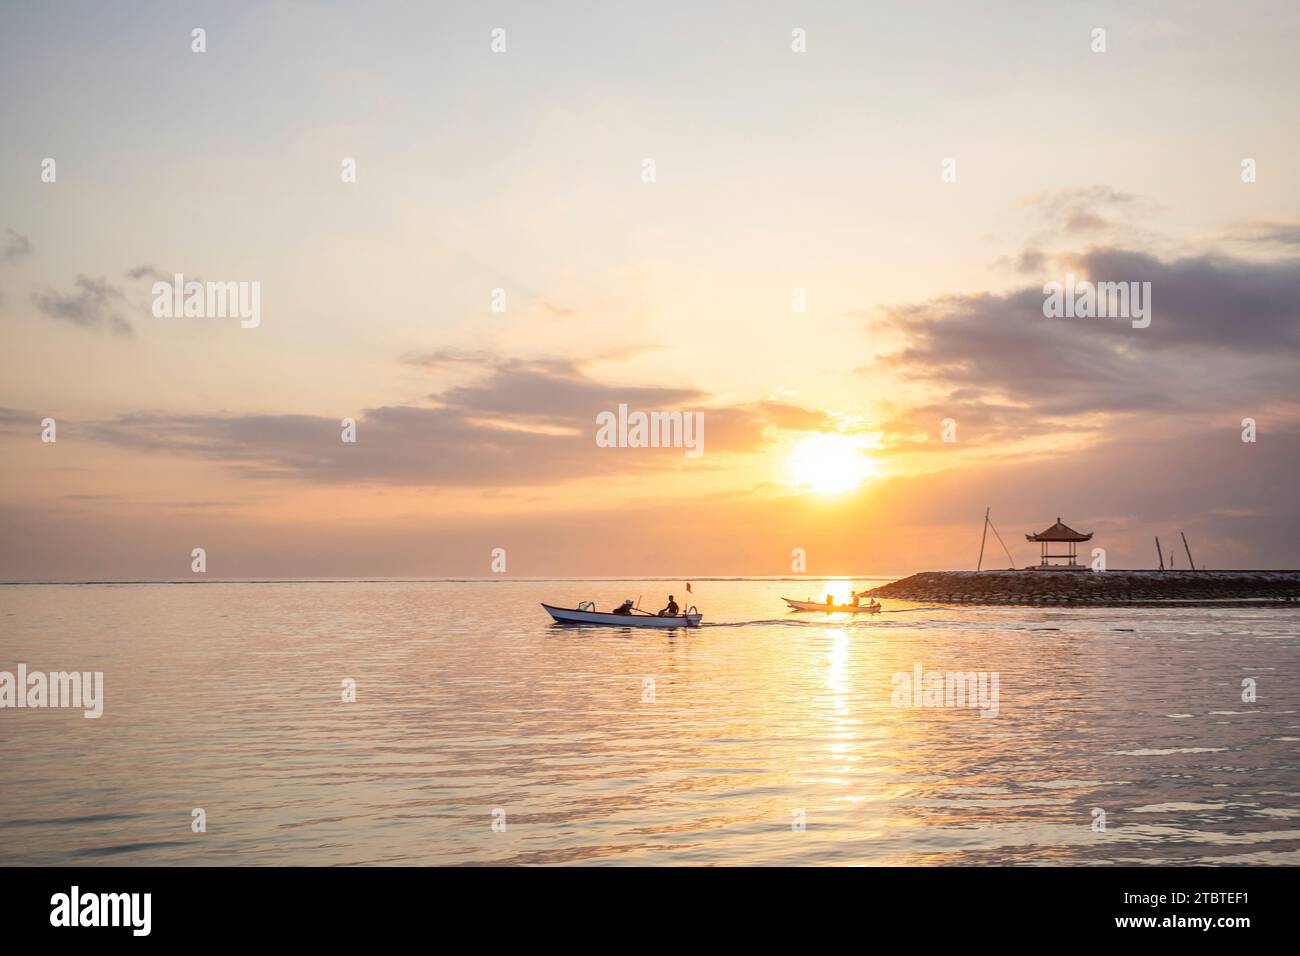 Paysage matinal pris sur une plage de sable, vue sur la mer à l'horizon avec de petits temples dans l'eau et un jukung, un bateau de pêche traditionnel dans la mer, lever du soleil à Sanur, Bali, Indonésie Banque D'Images